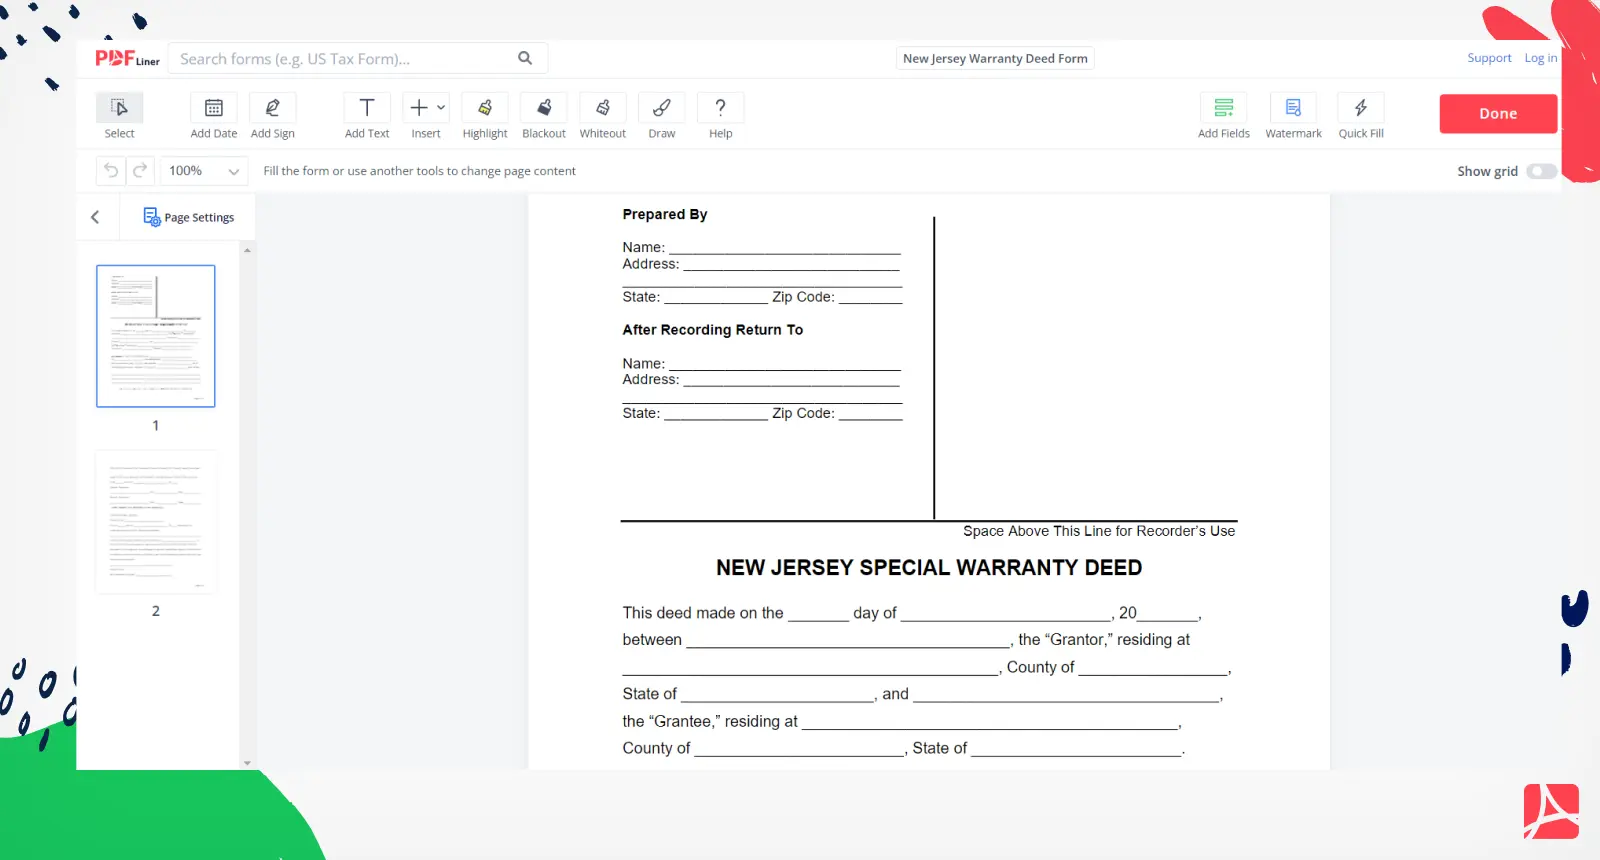 New Jersey Warranty Deed Form Screenshot